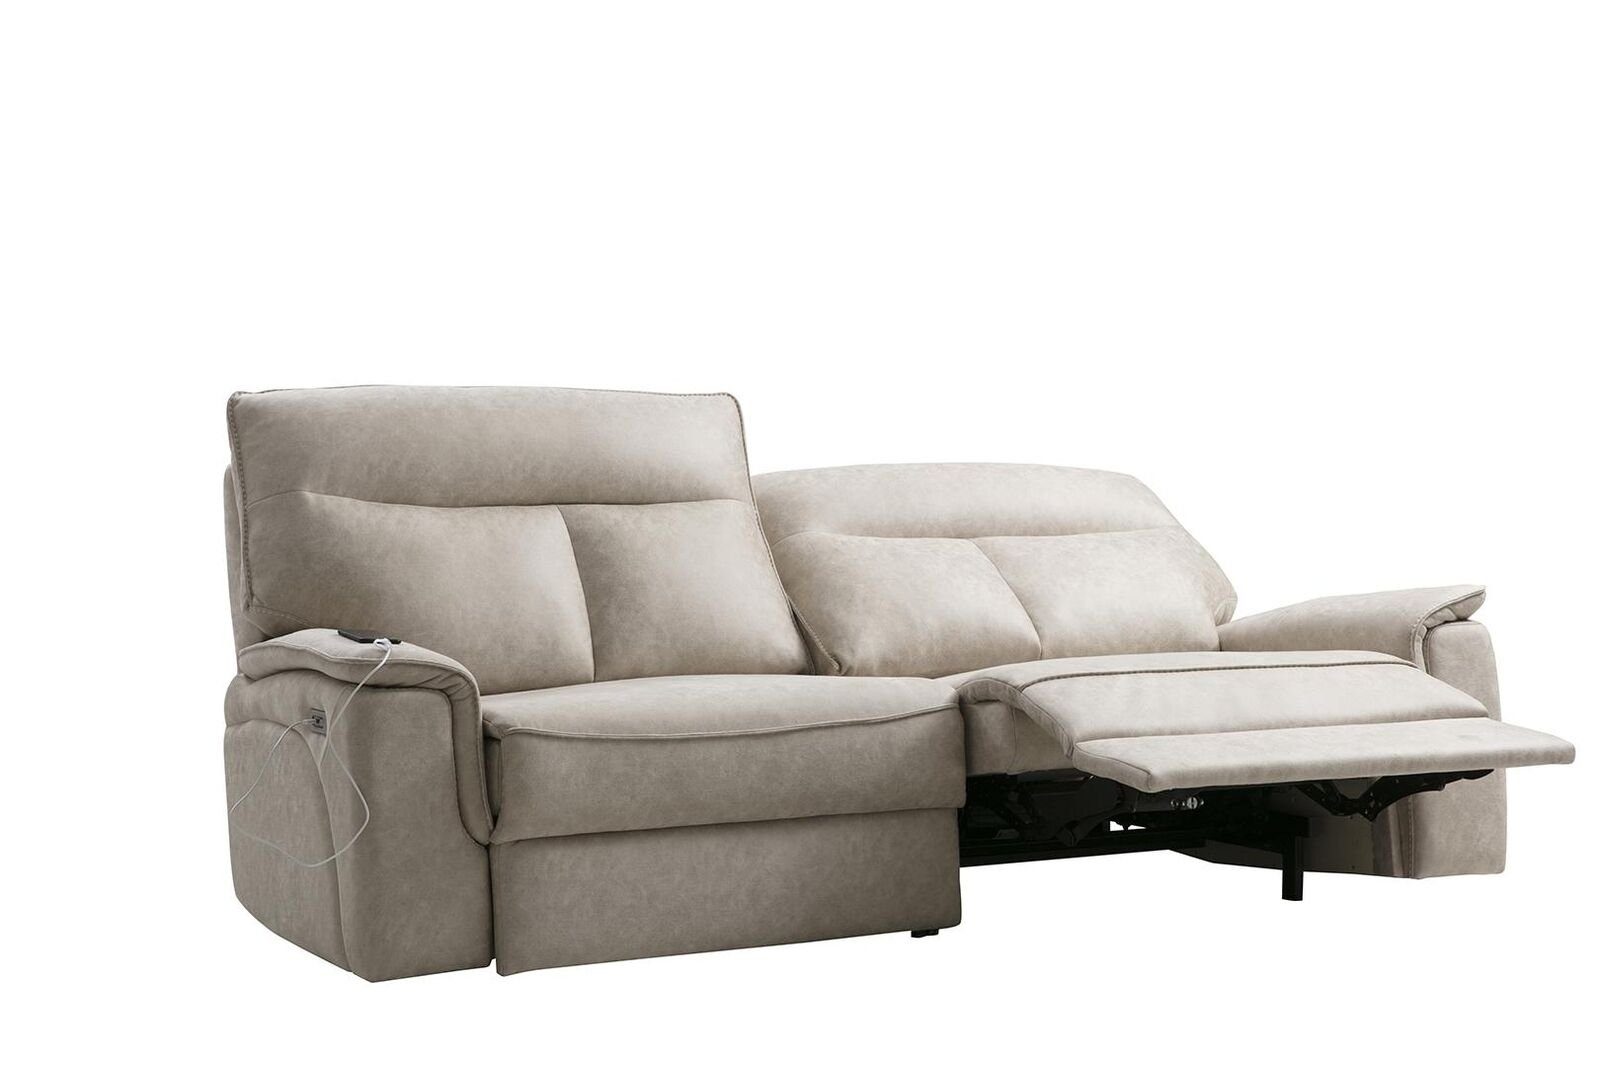 JVmoebel Sofa Set Design Dreisitzer 2 Couch Teile, Modern Wohnzimmer, Europa in Made Garnitur